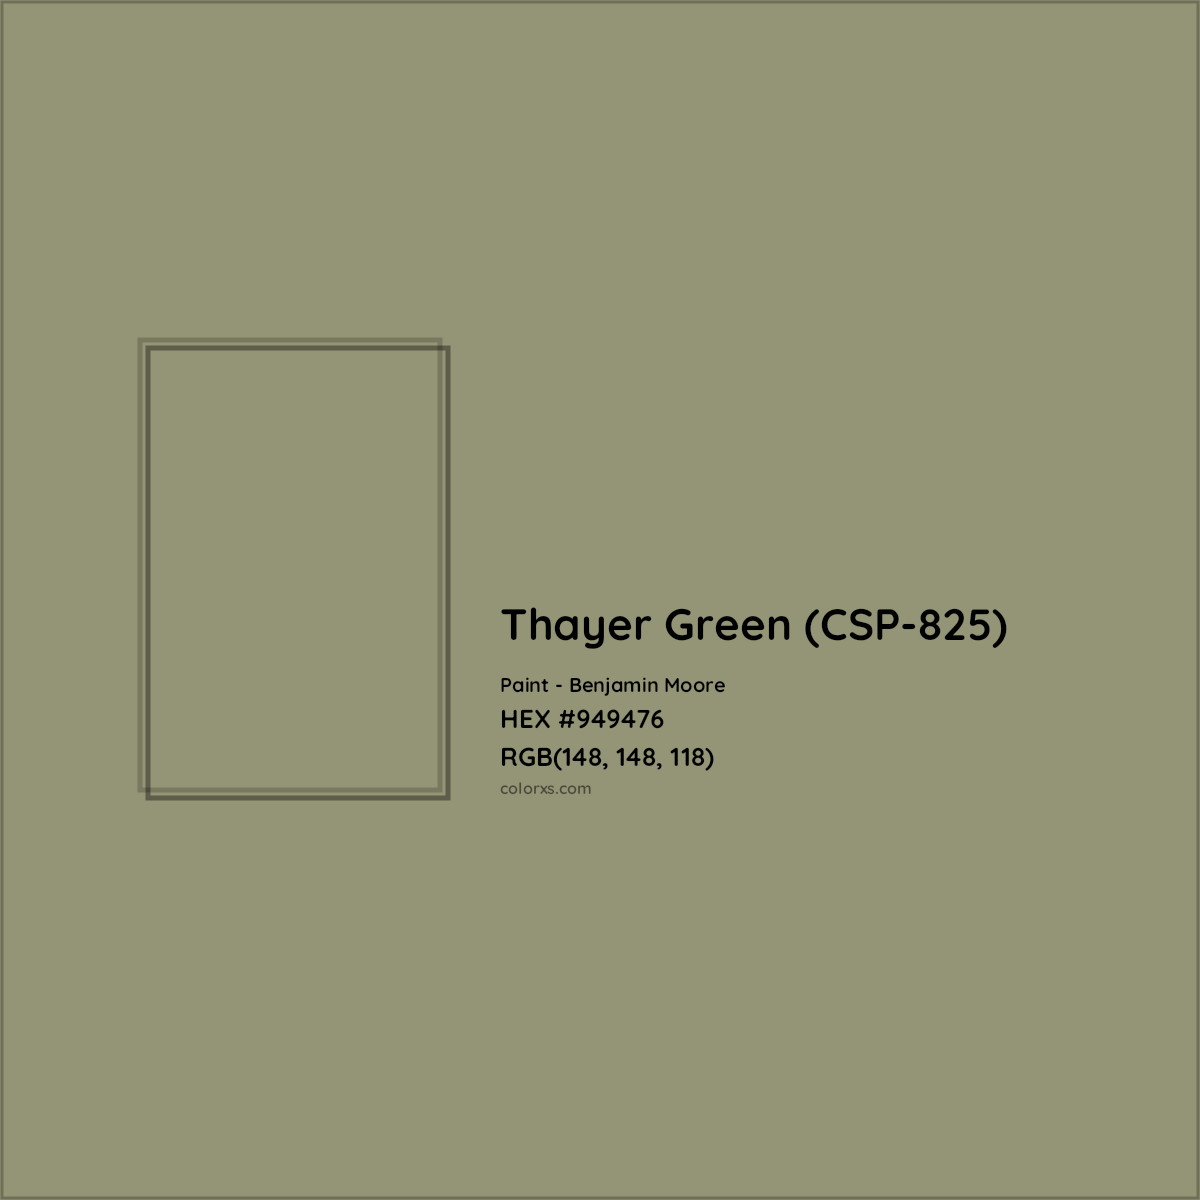 HEX #949476 Thayer Green (CSP-825) Paint Benjamin Moore - Color Code